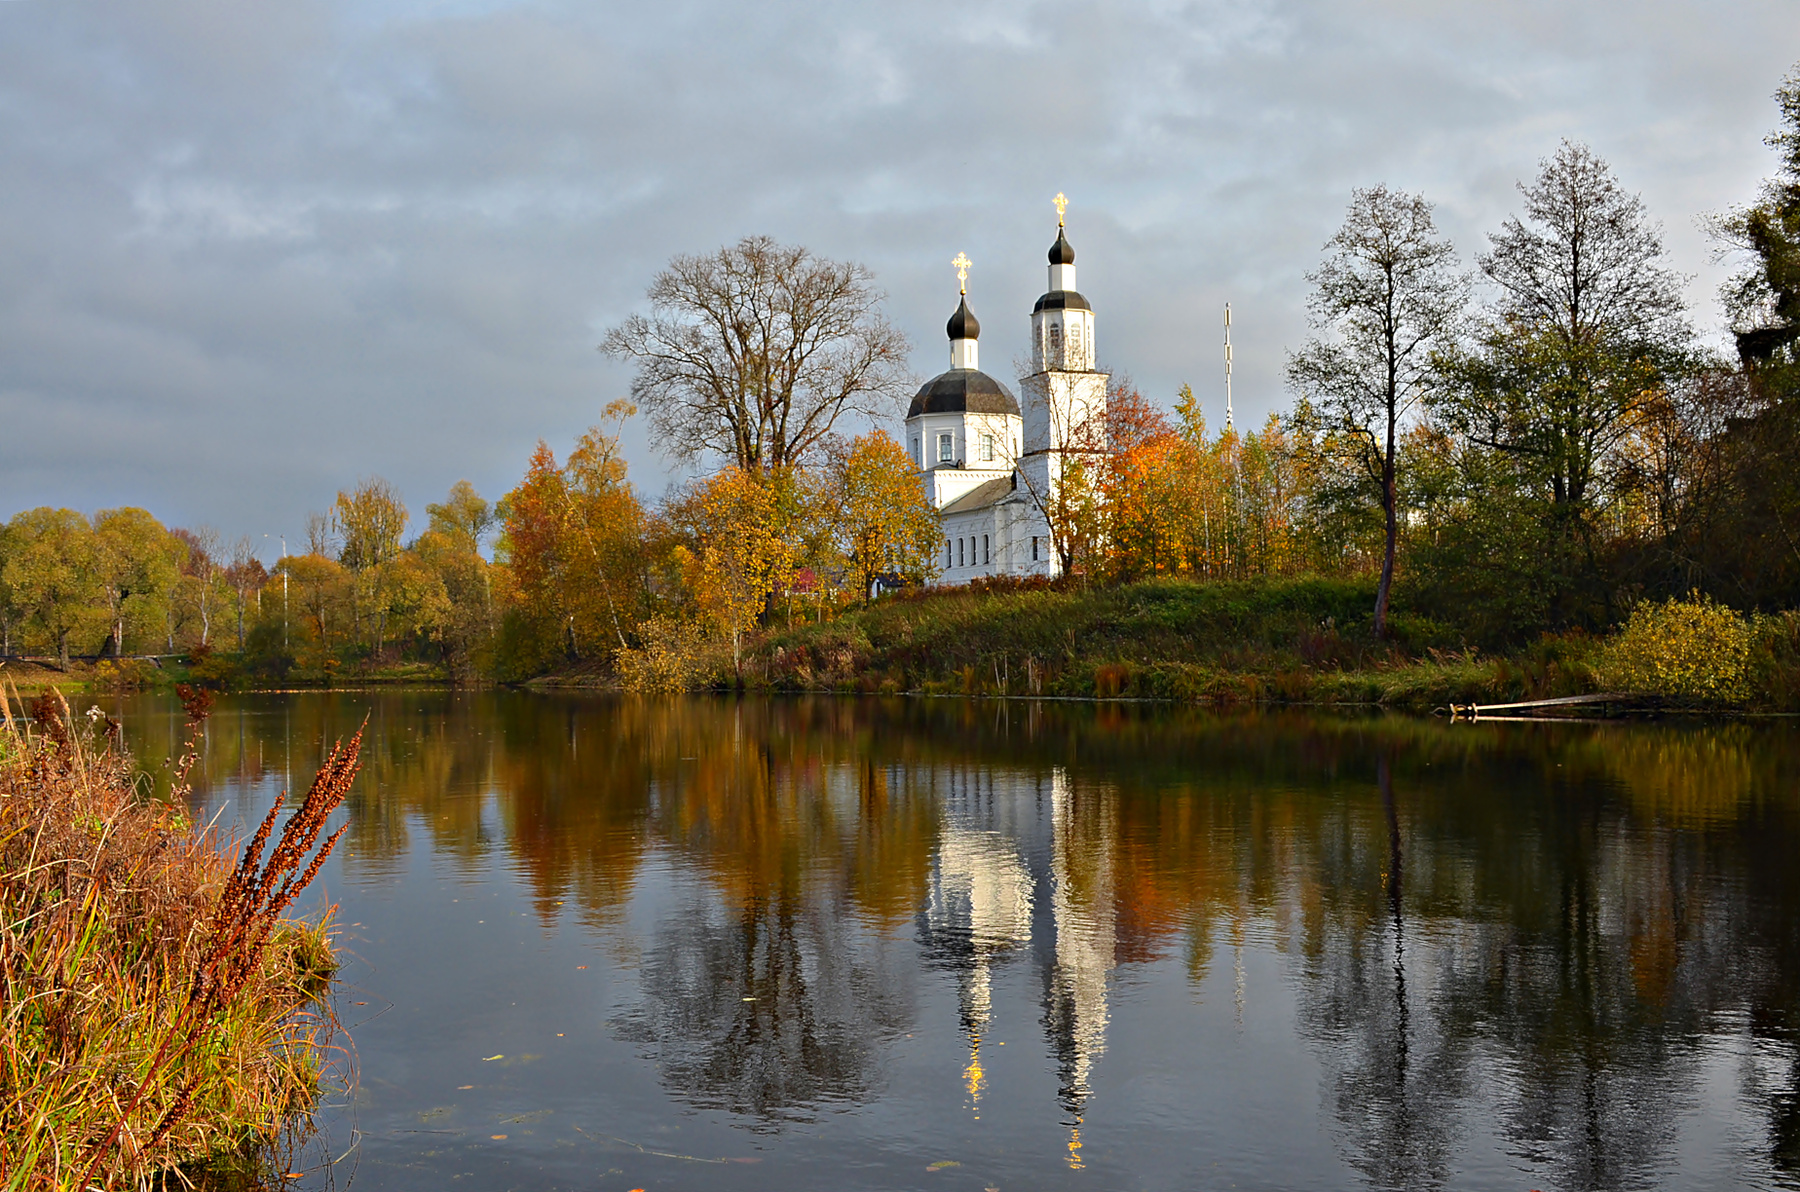 Осень в Руднево. Москва Новофедоровское Руднево осень октябрь храм церковь река отражение